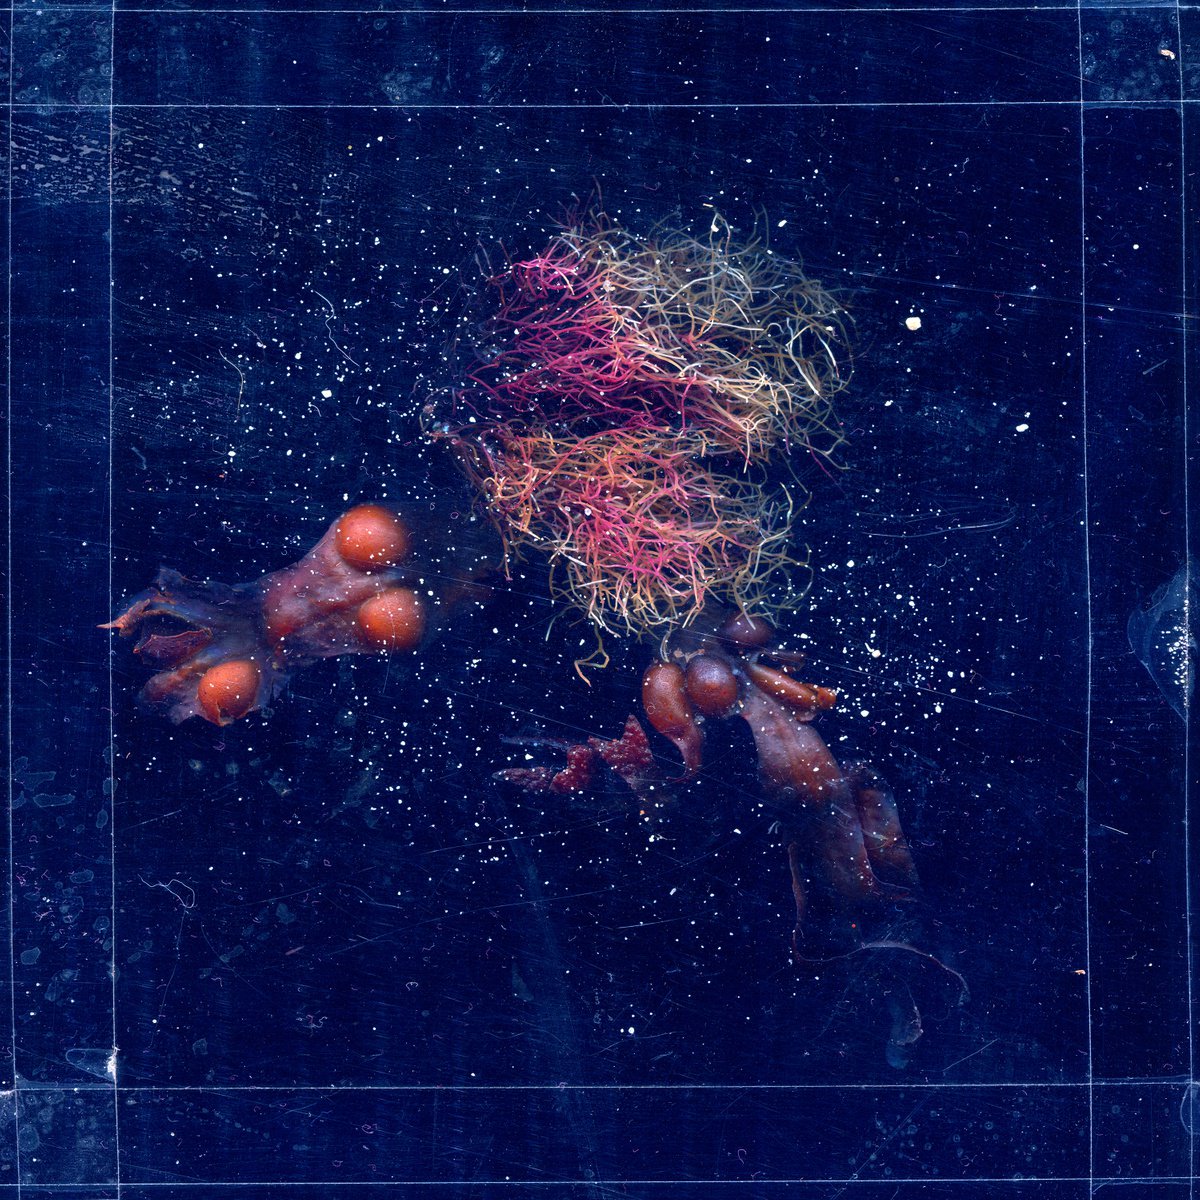 algae and crabs 3 by Jochim Lichtenberger